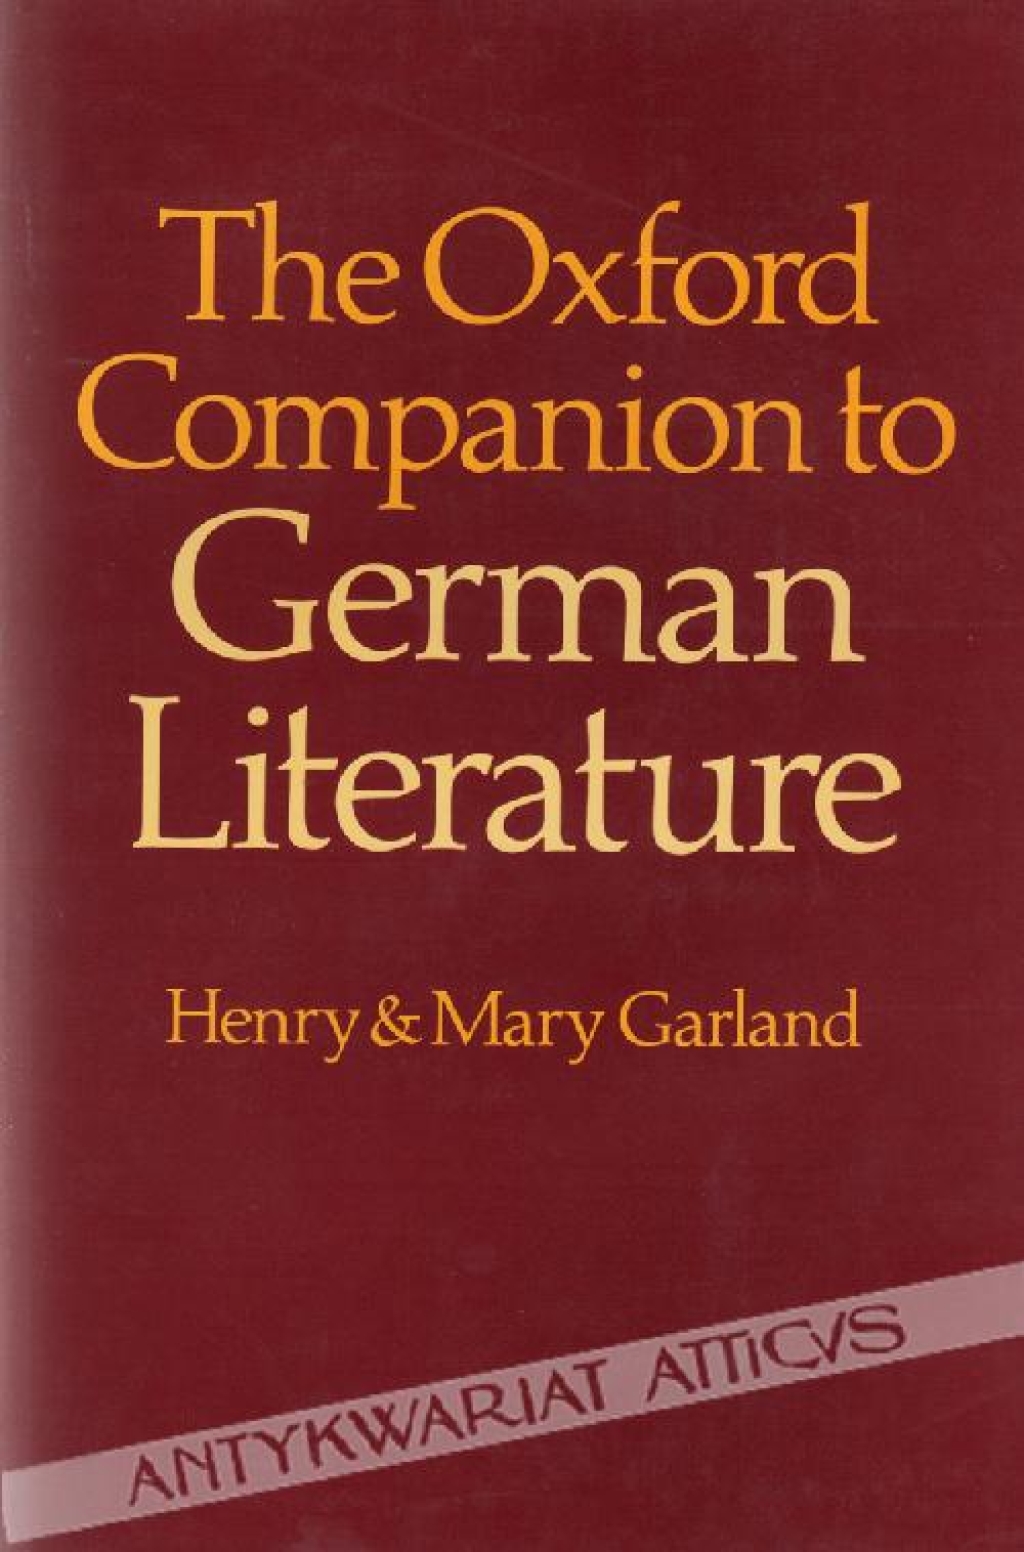 The Oxford Companion to German Literature